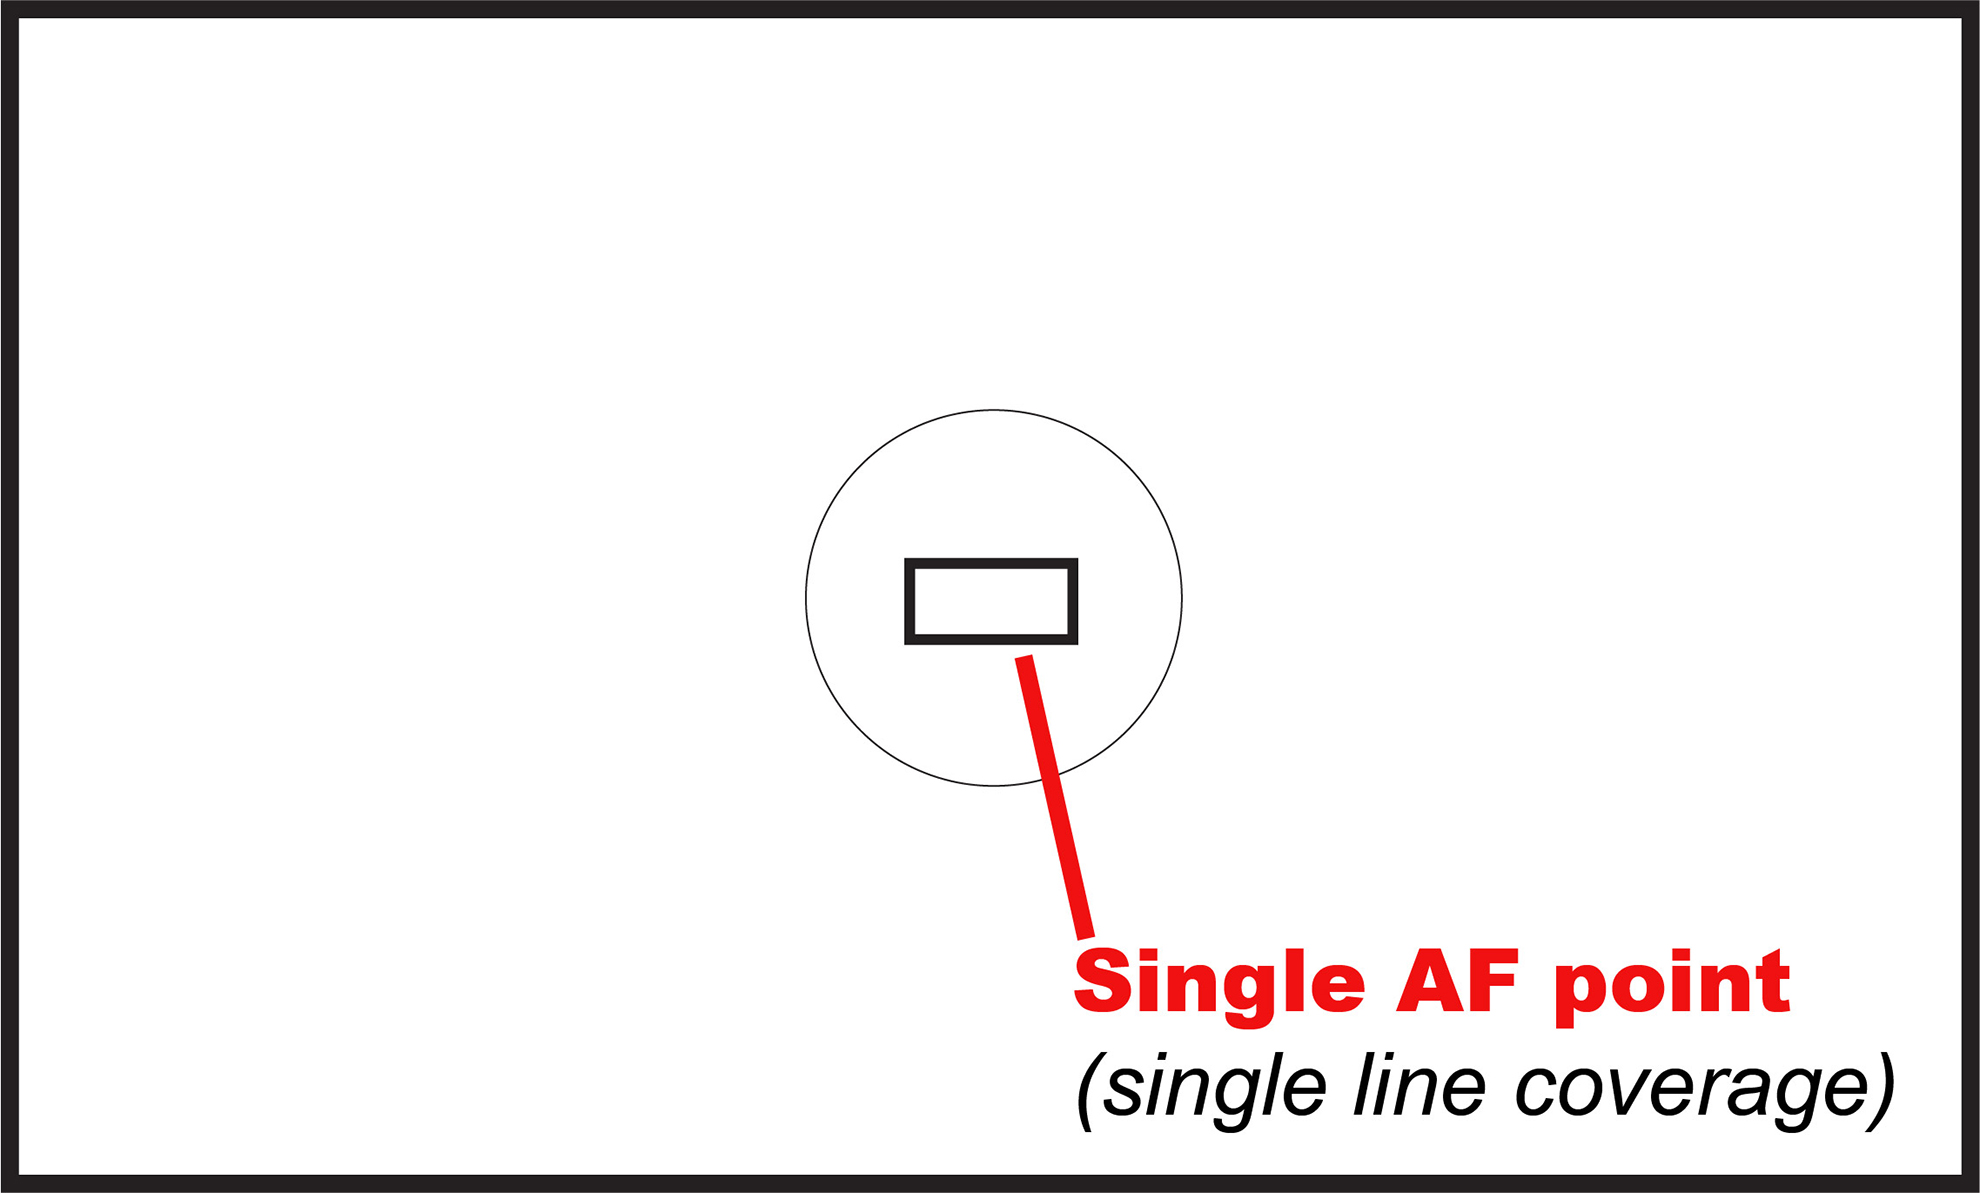 Single AF point